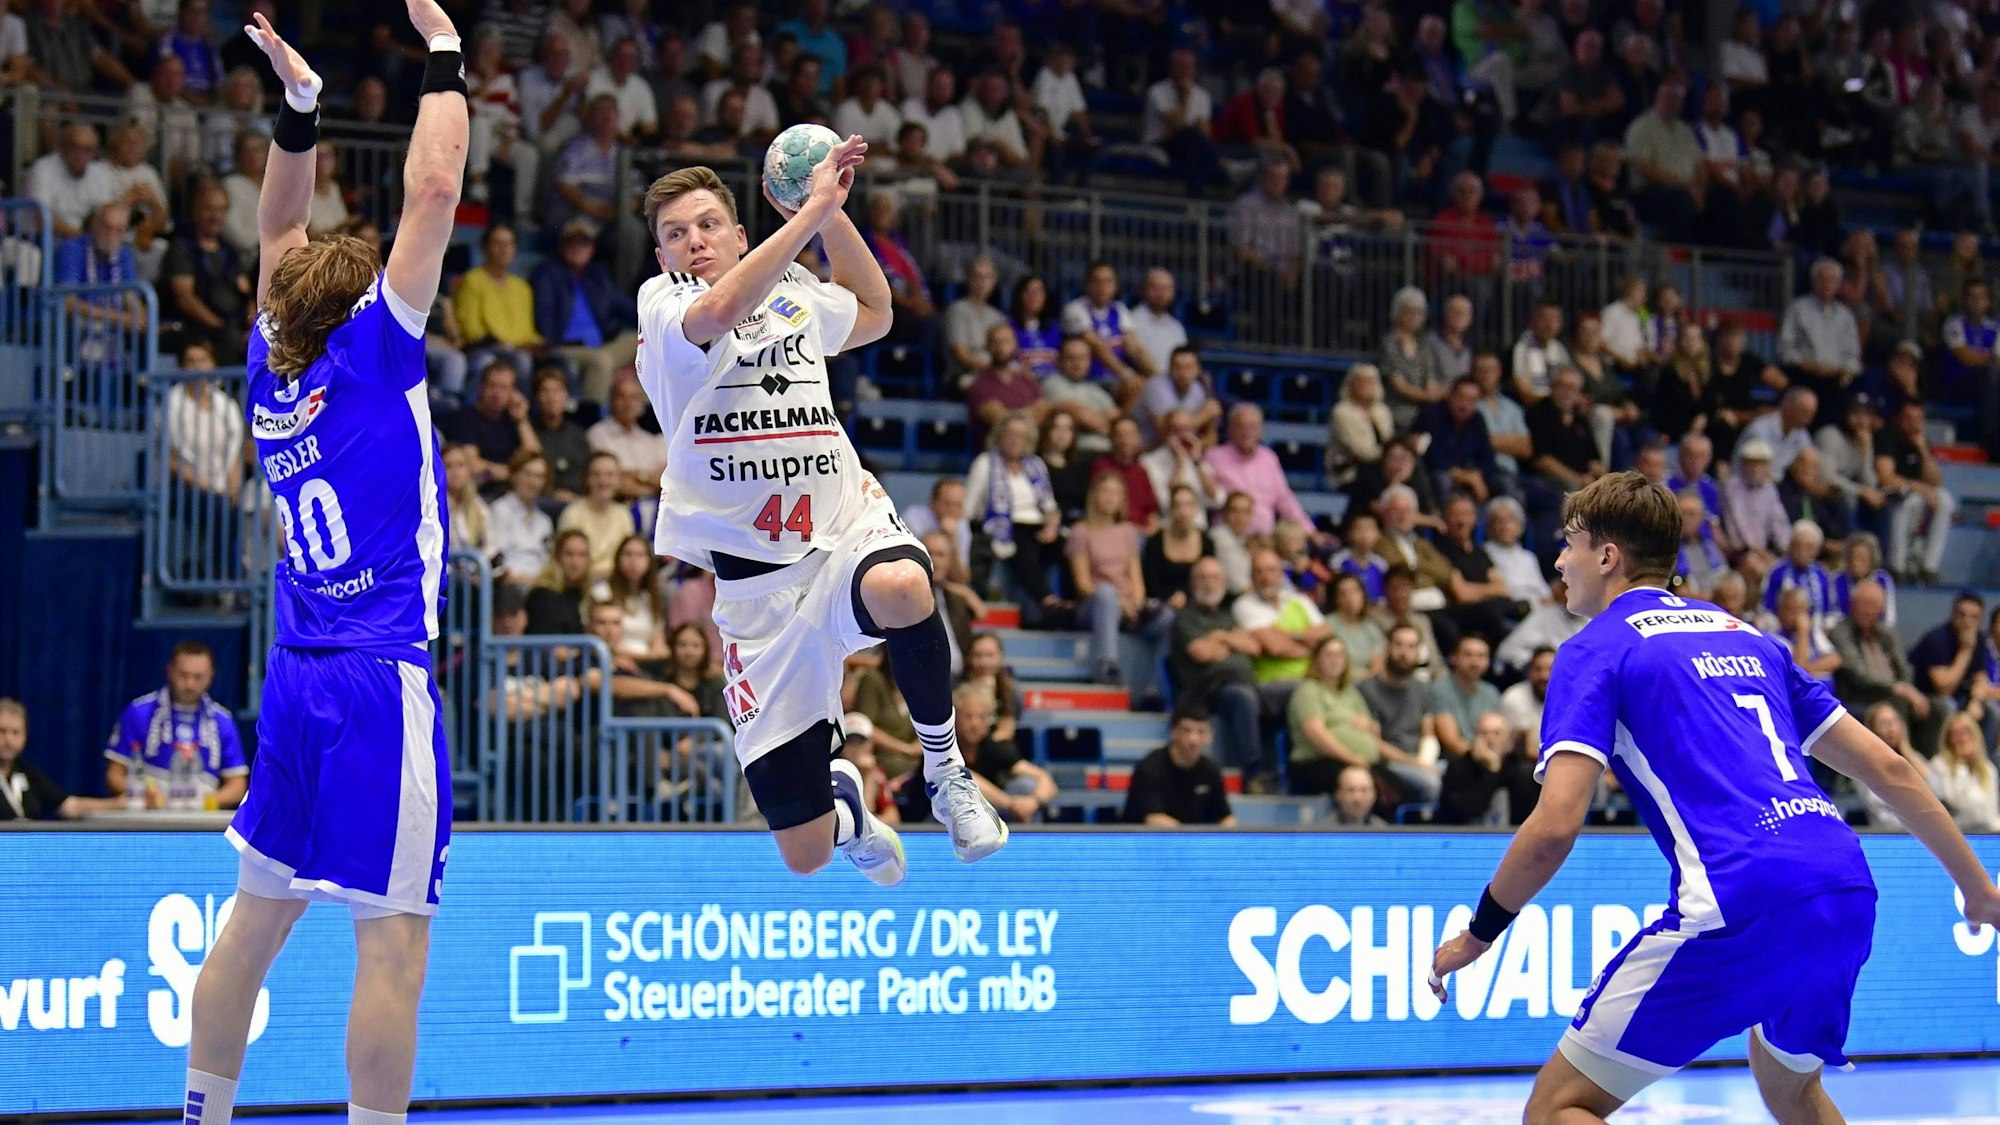 Erlangens Nationalspieler Christoph Steinert ist im Sprungwurf, den Tom Kiesler blocken möchte.